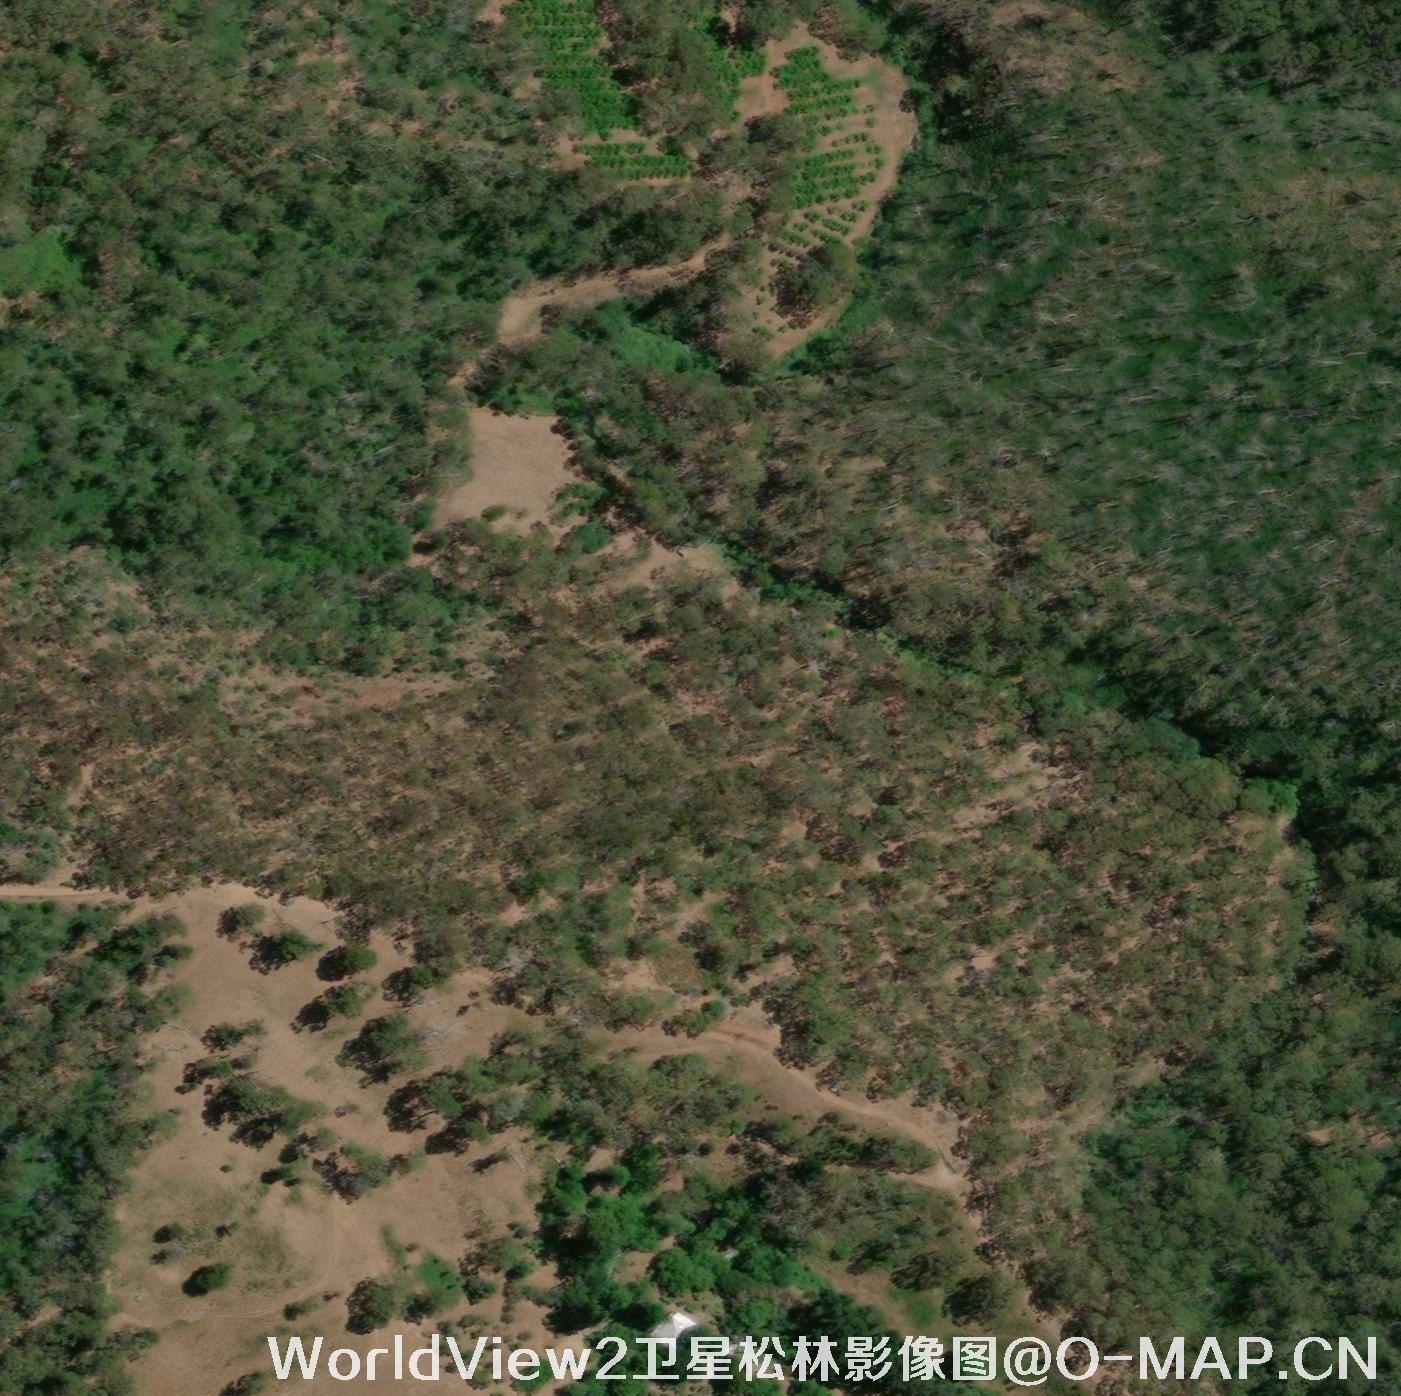 WorldView2卫星拍摄的高清卫星图片